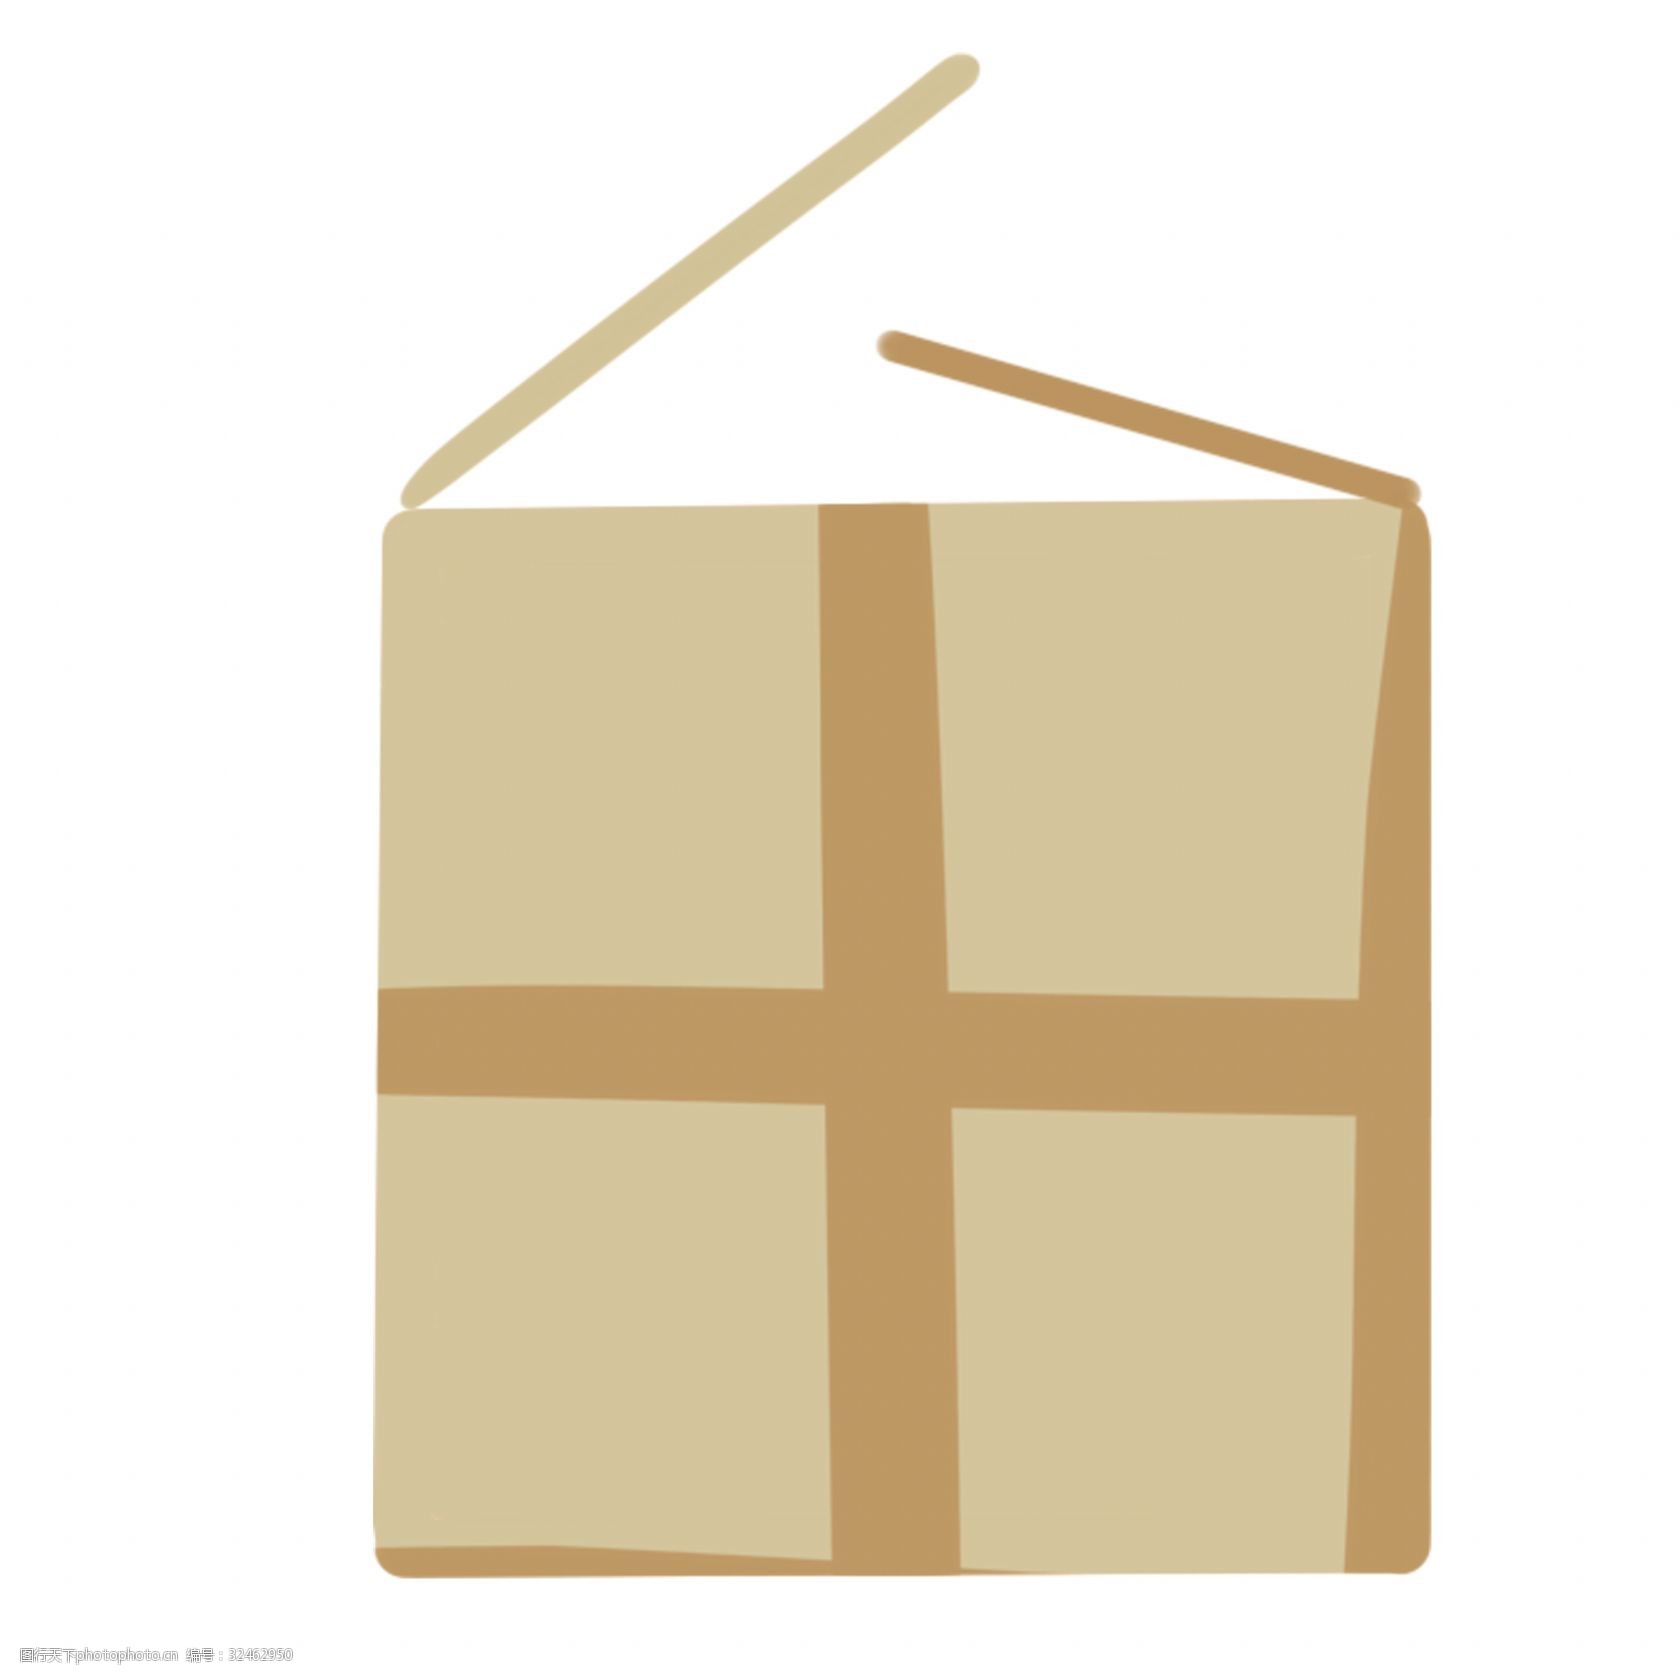 关键词:纸箱卡通png素材 纸箱 纸箱子 棕色纸箱子 快递箱 包装纸箱